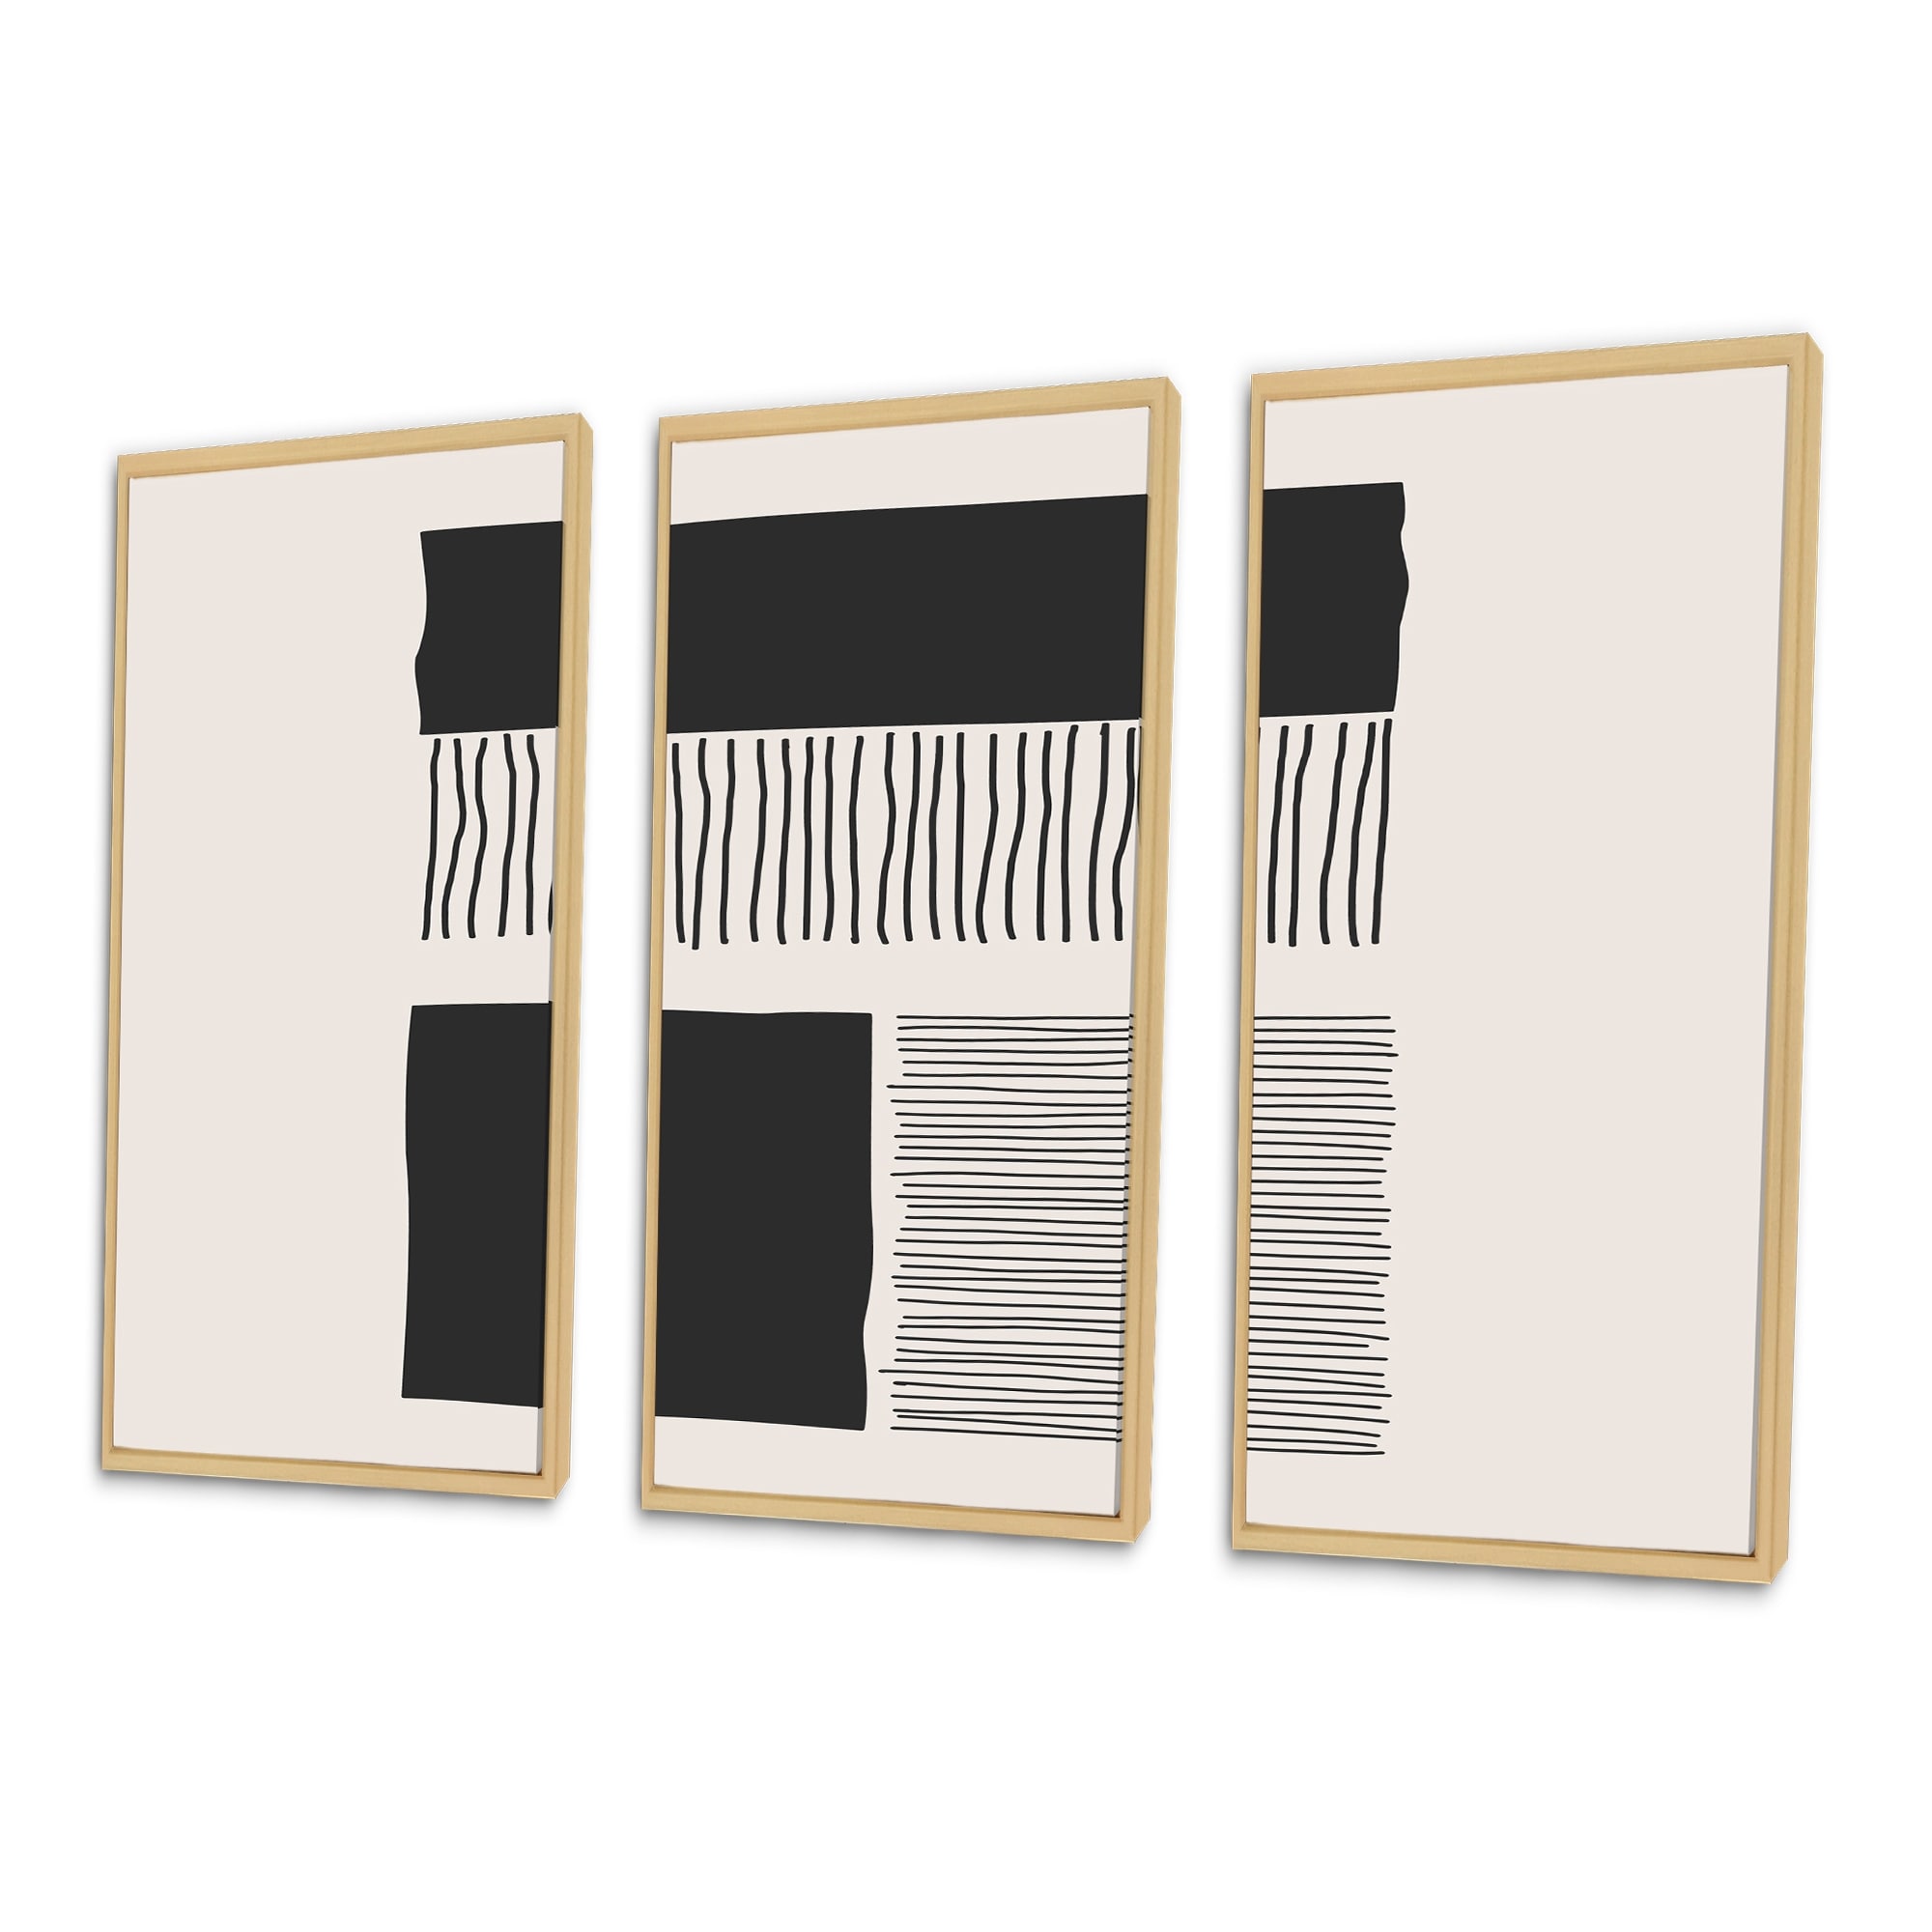 Designart "Minimal Geometric Lines And Squares VII" Modern Framed Art Prints Set of 3 - 4 Colors of Frames